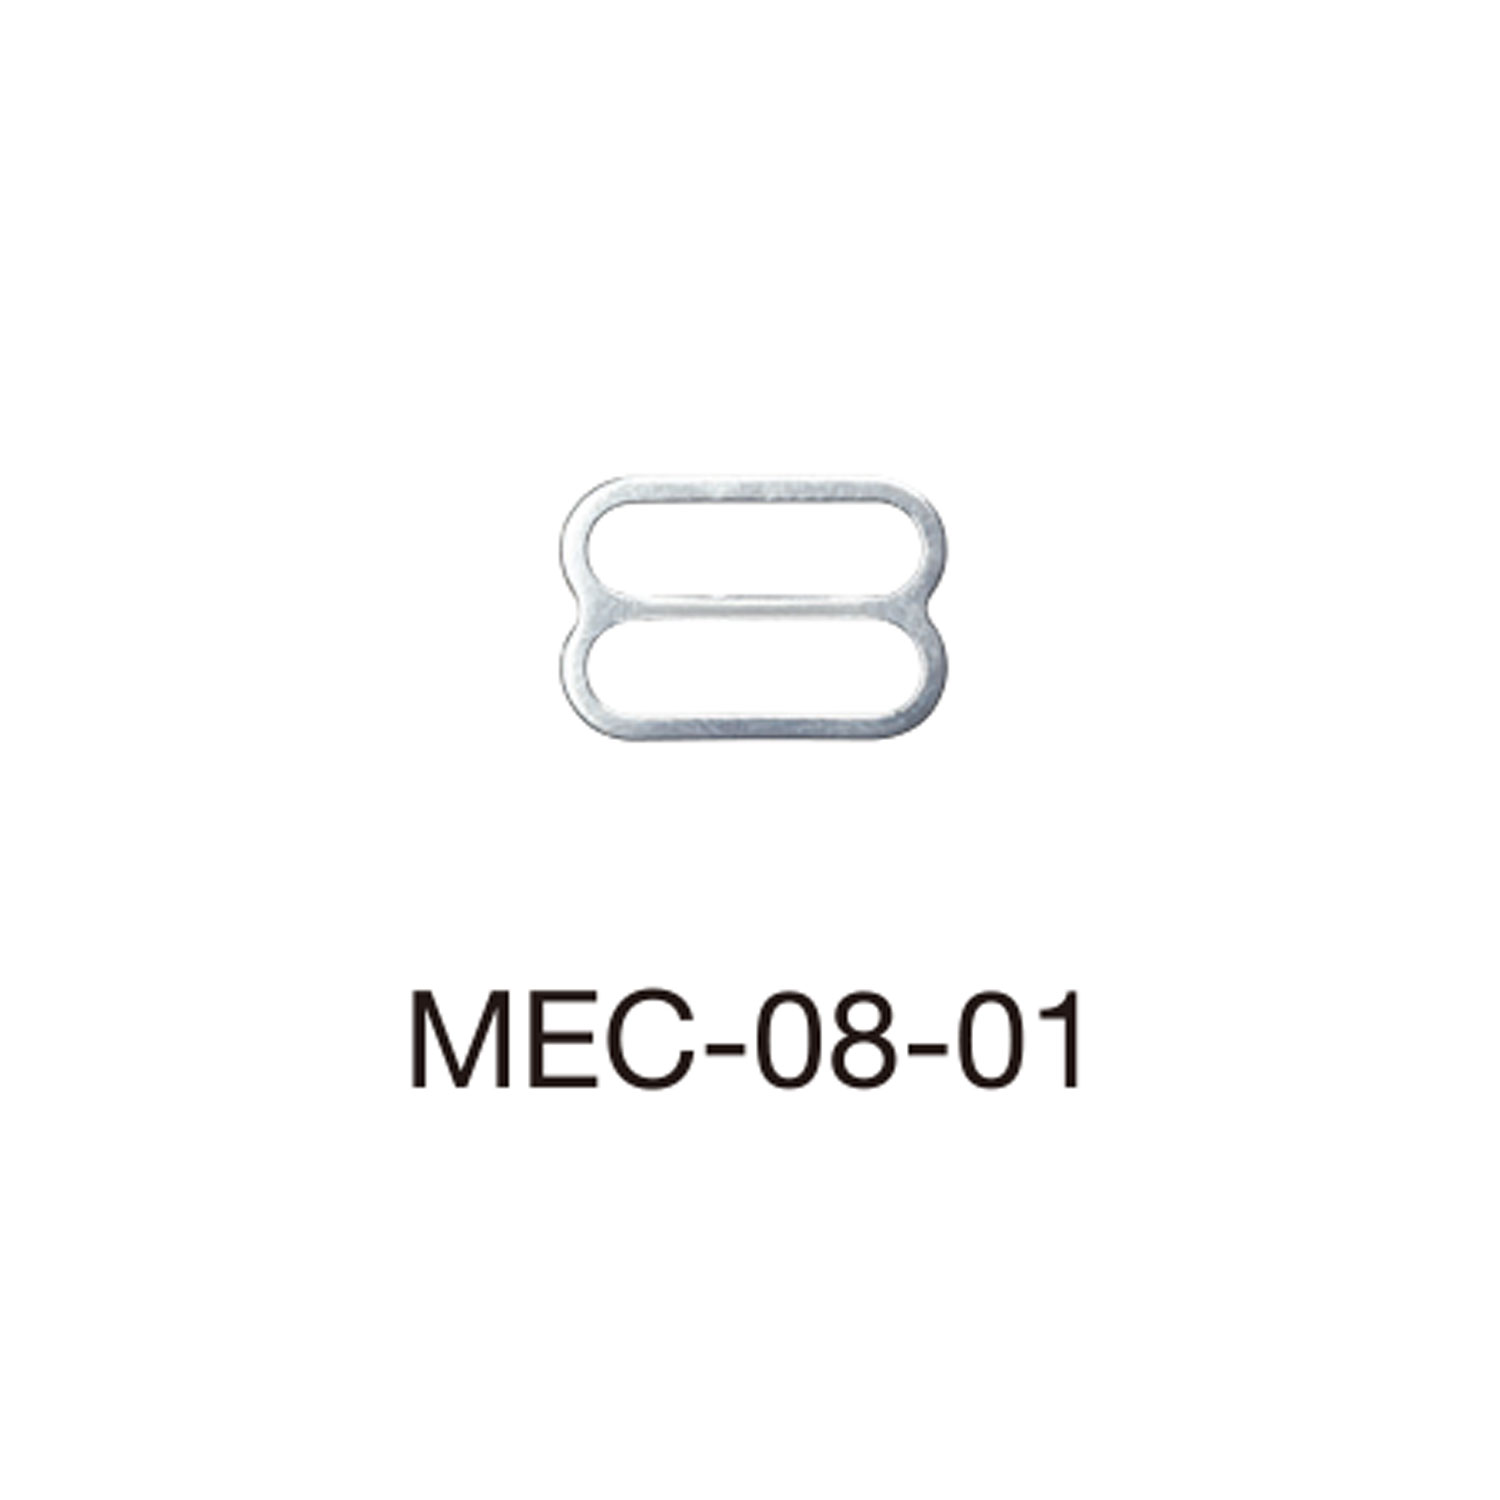 MEC08-01 Ajustador De Correa De Sujetador Para Tela Fina De 8 Mm * Compatible Con Detector De Aguja[Hebillas Y Anillo] Morito